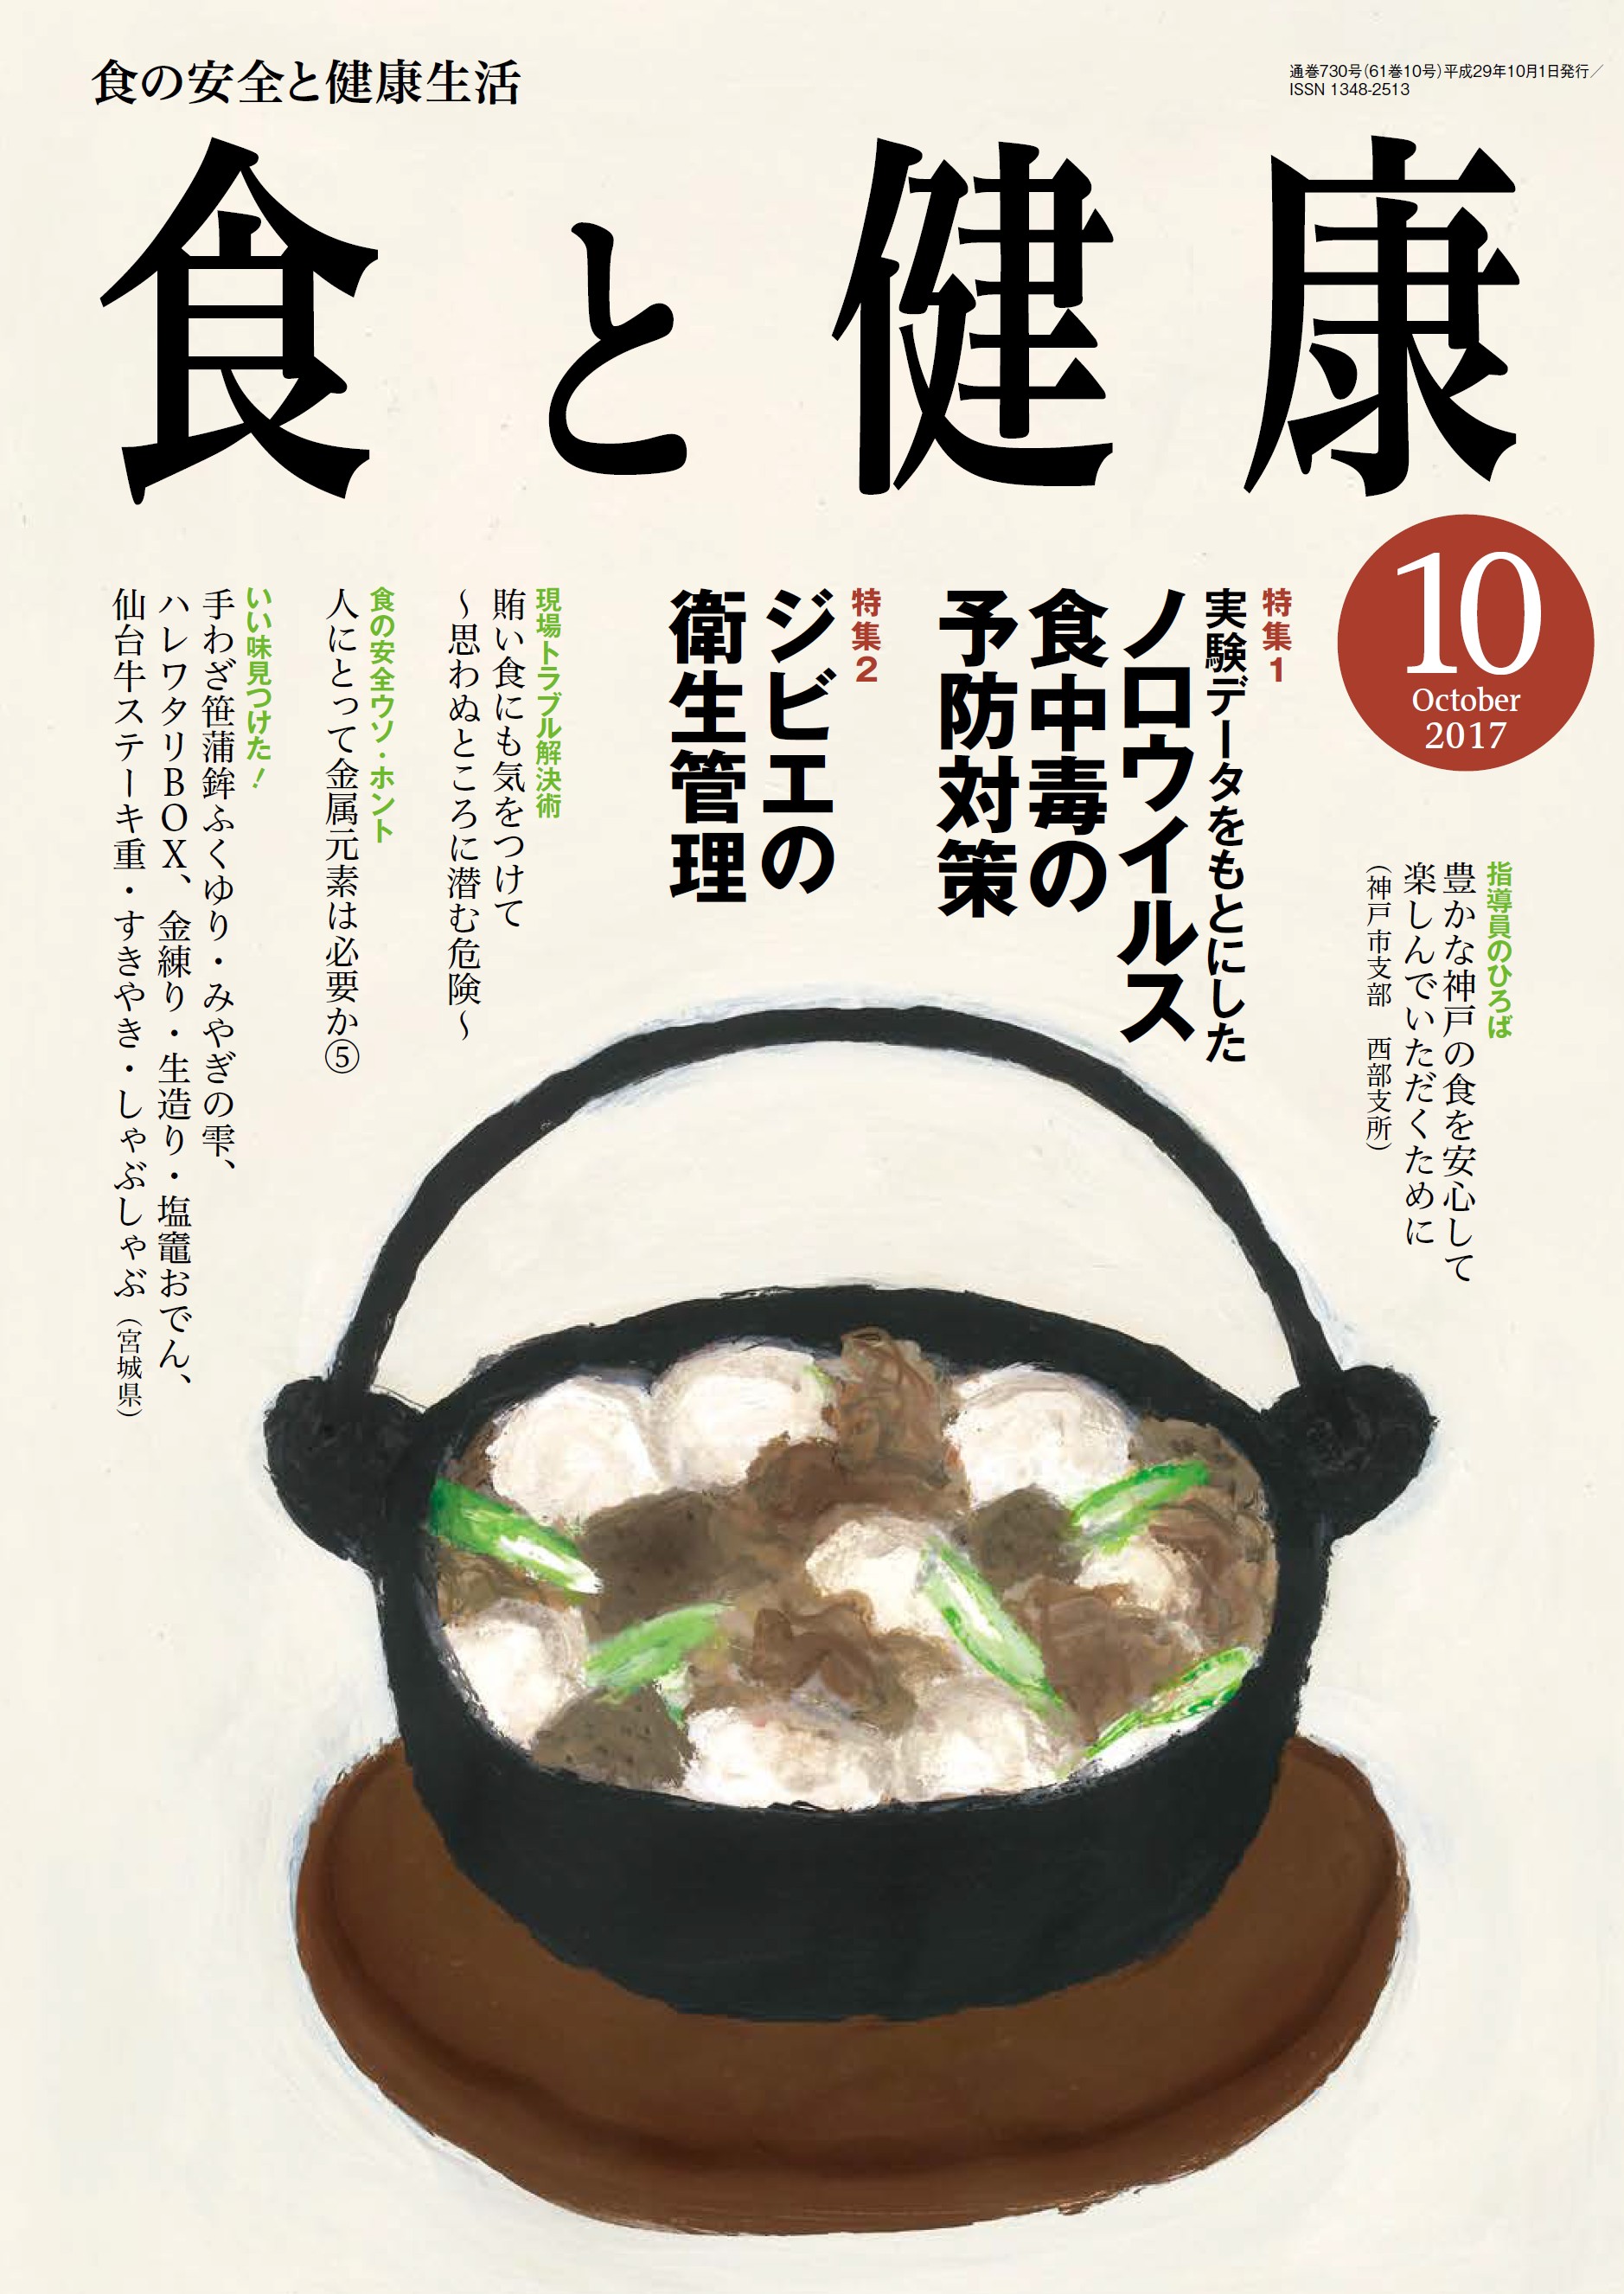 「食と健康」2017年10月号に「ジビエの衛生管理」特集掲載 ジビエが地域を元気にする 日本ジビエ振興協会